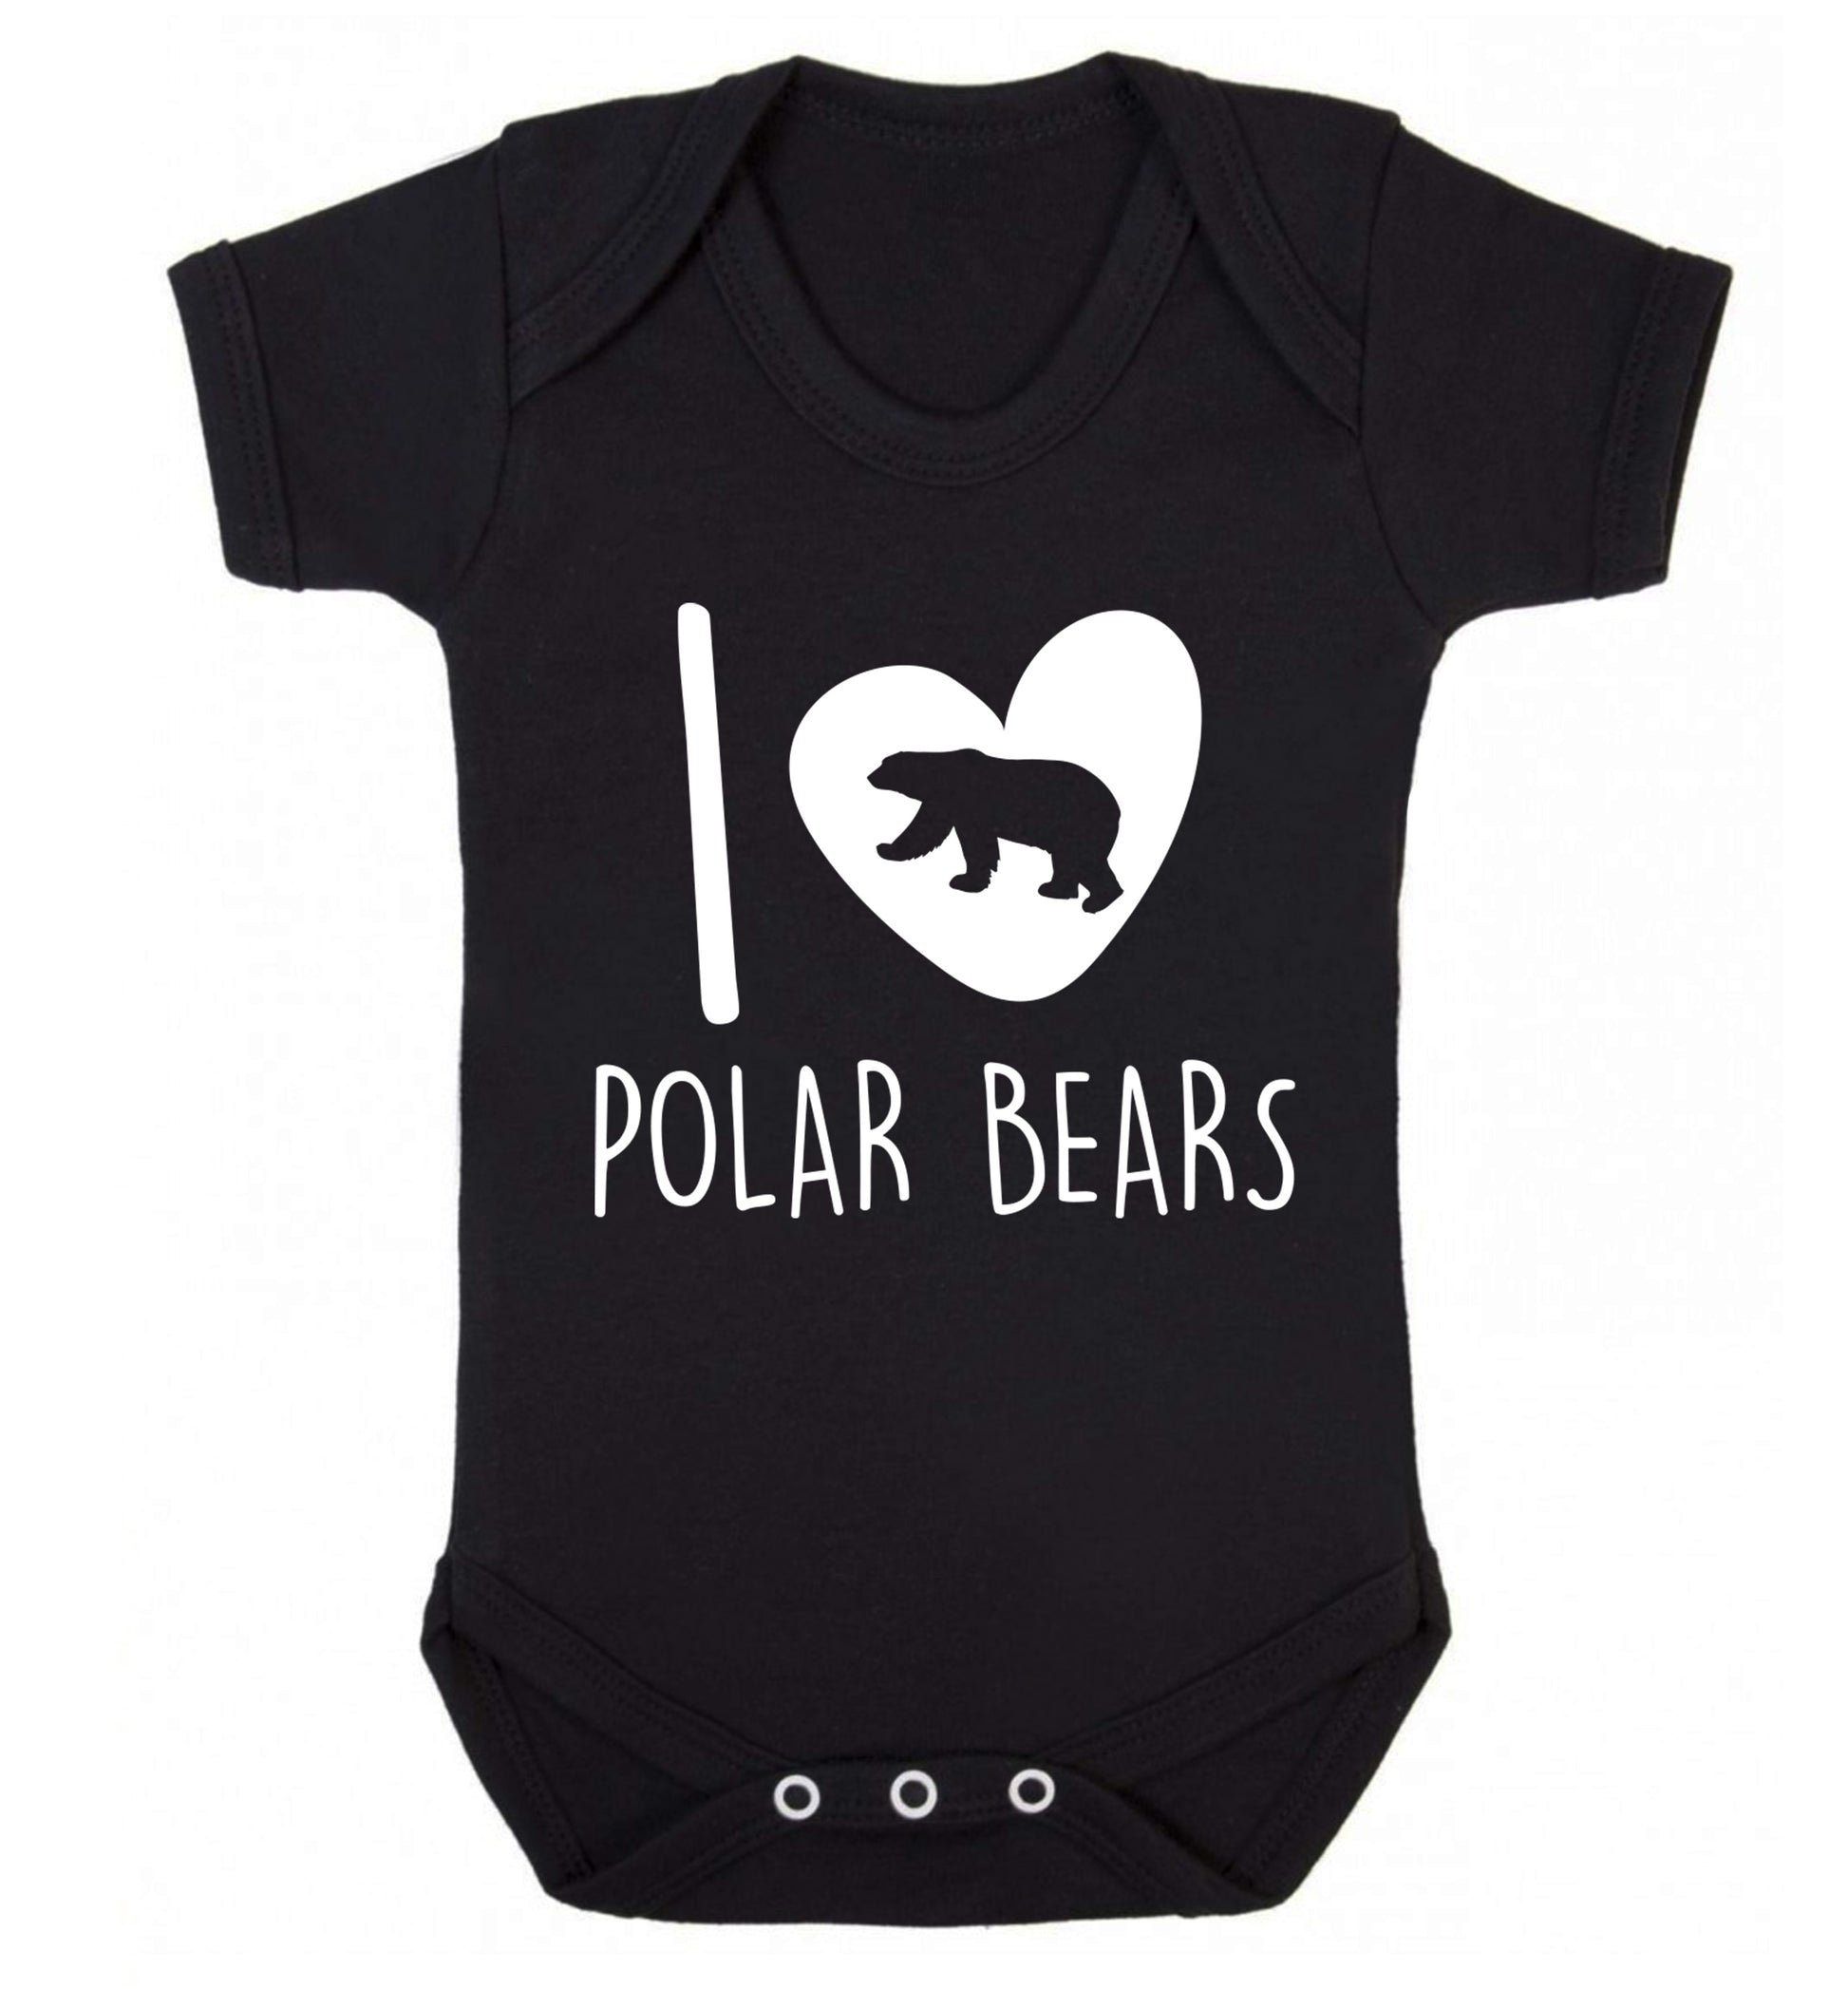 I Love Polar Bears Baby Vest black 18-24 months